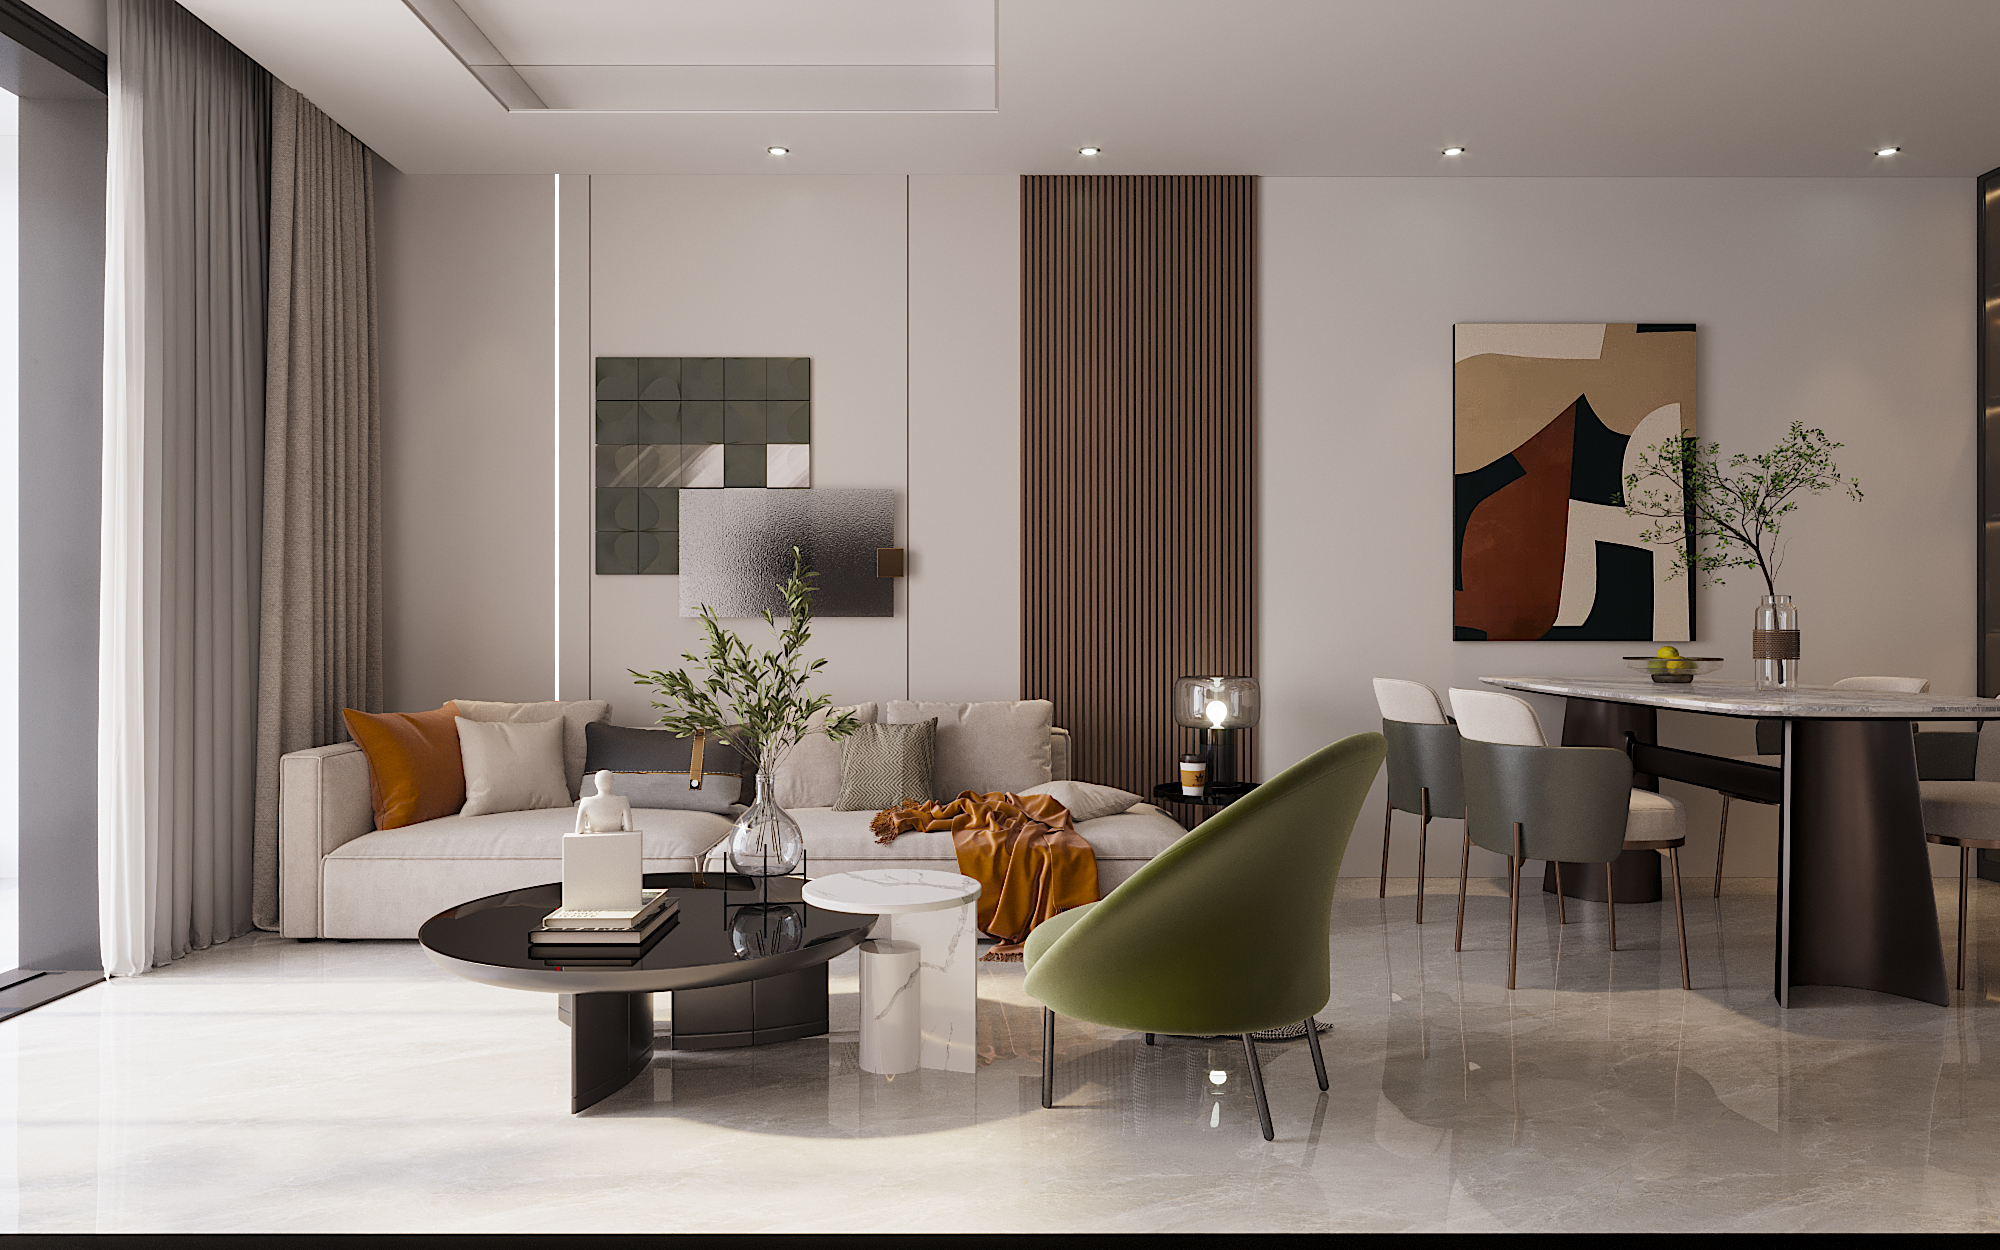 Sự phối hợp màu sắc tinh tế, hài hòa và độc đáo tạo ấn tượng cho không gian phòng khách.